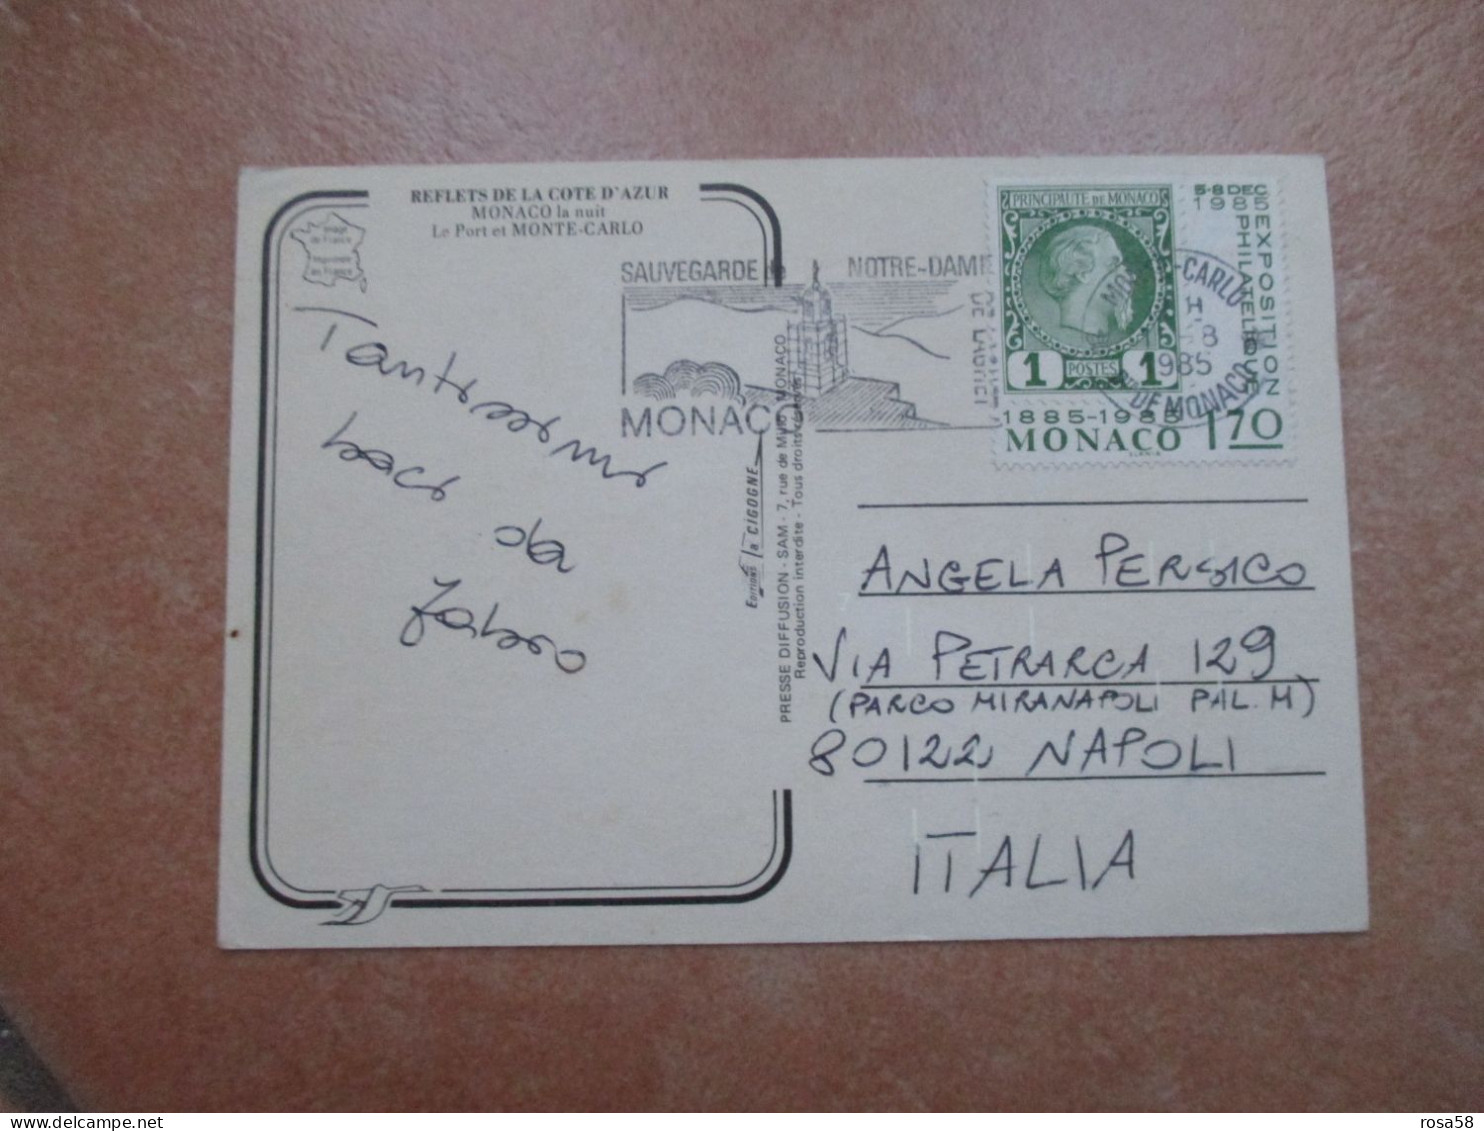 1985 Annullo Meccanico SAUVEGARDE Notre Dame Su F.bollo 1,70 1885 1985 - Covers & Documents